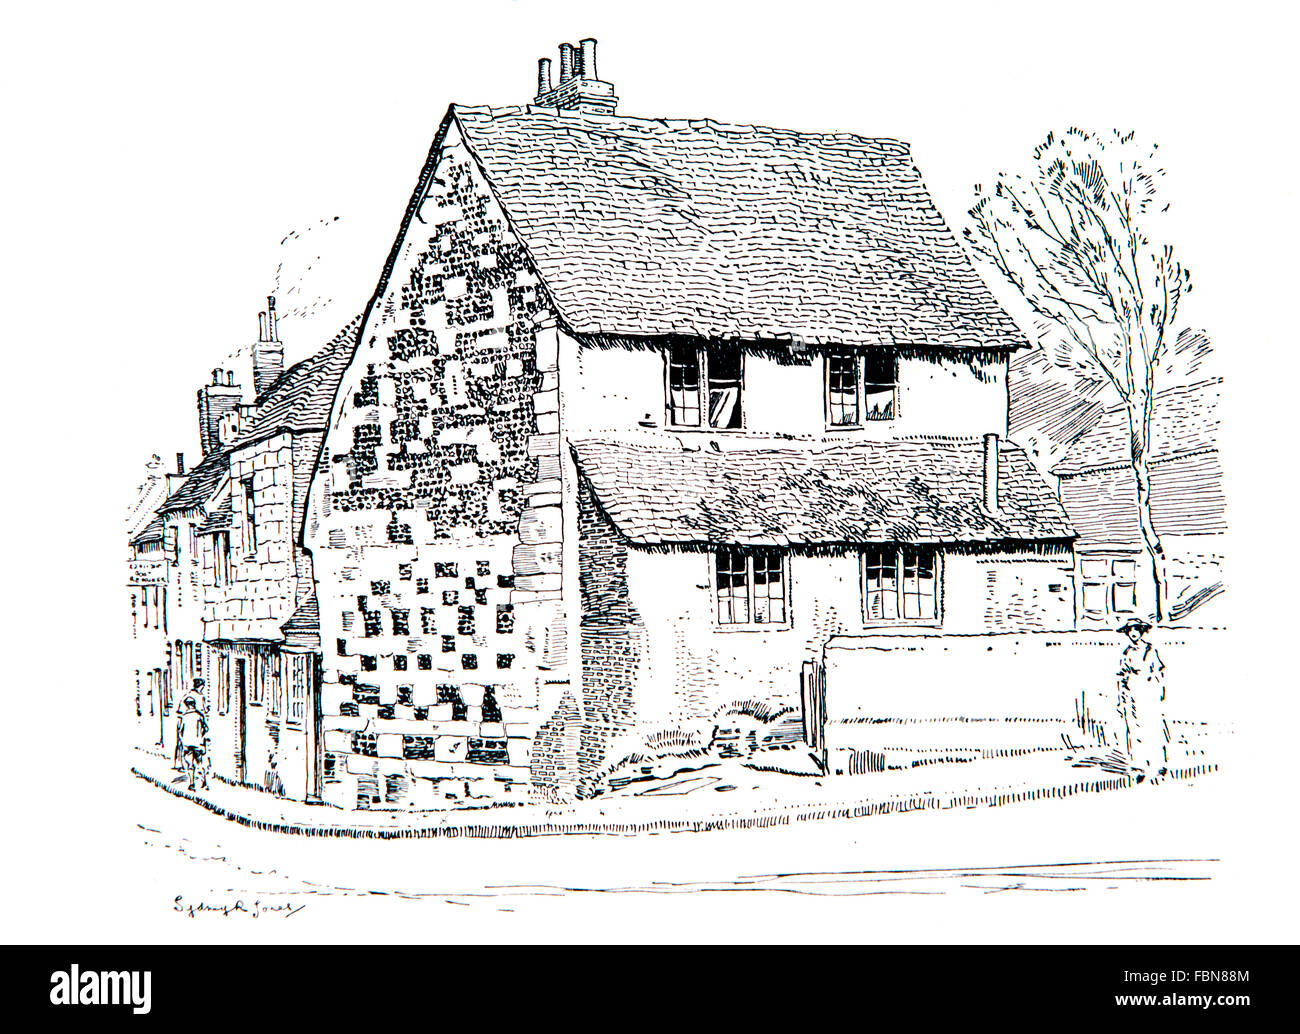 Großbritannien, England, Wiltshire, Salisbury, alte Ziegel und Stein Straße Ecke Ferienhaus Linie 1911 Illustration von Sydney R Jones Stockfoto